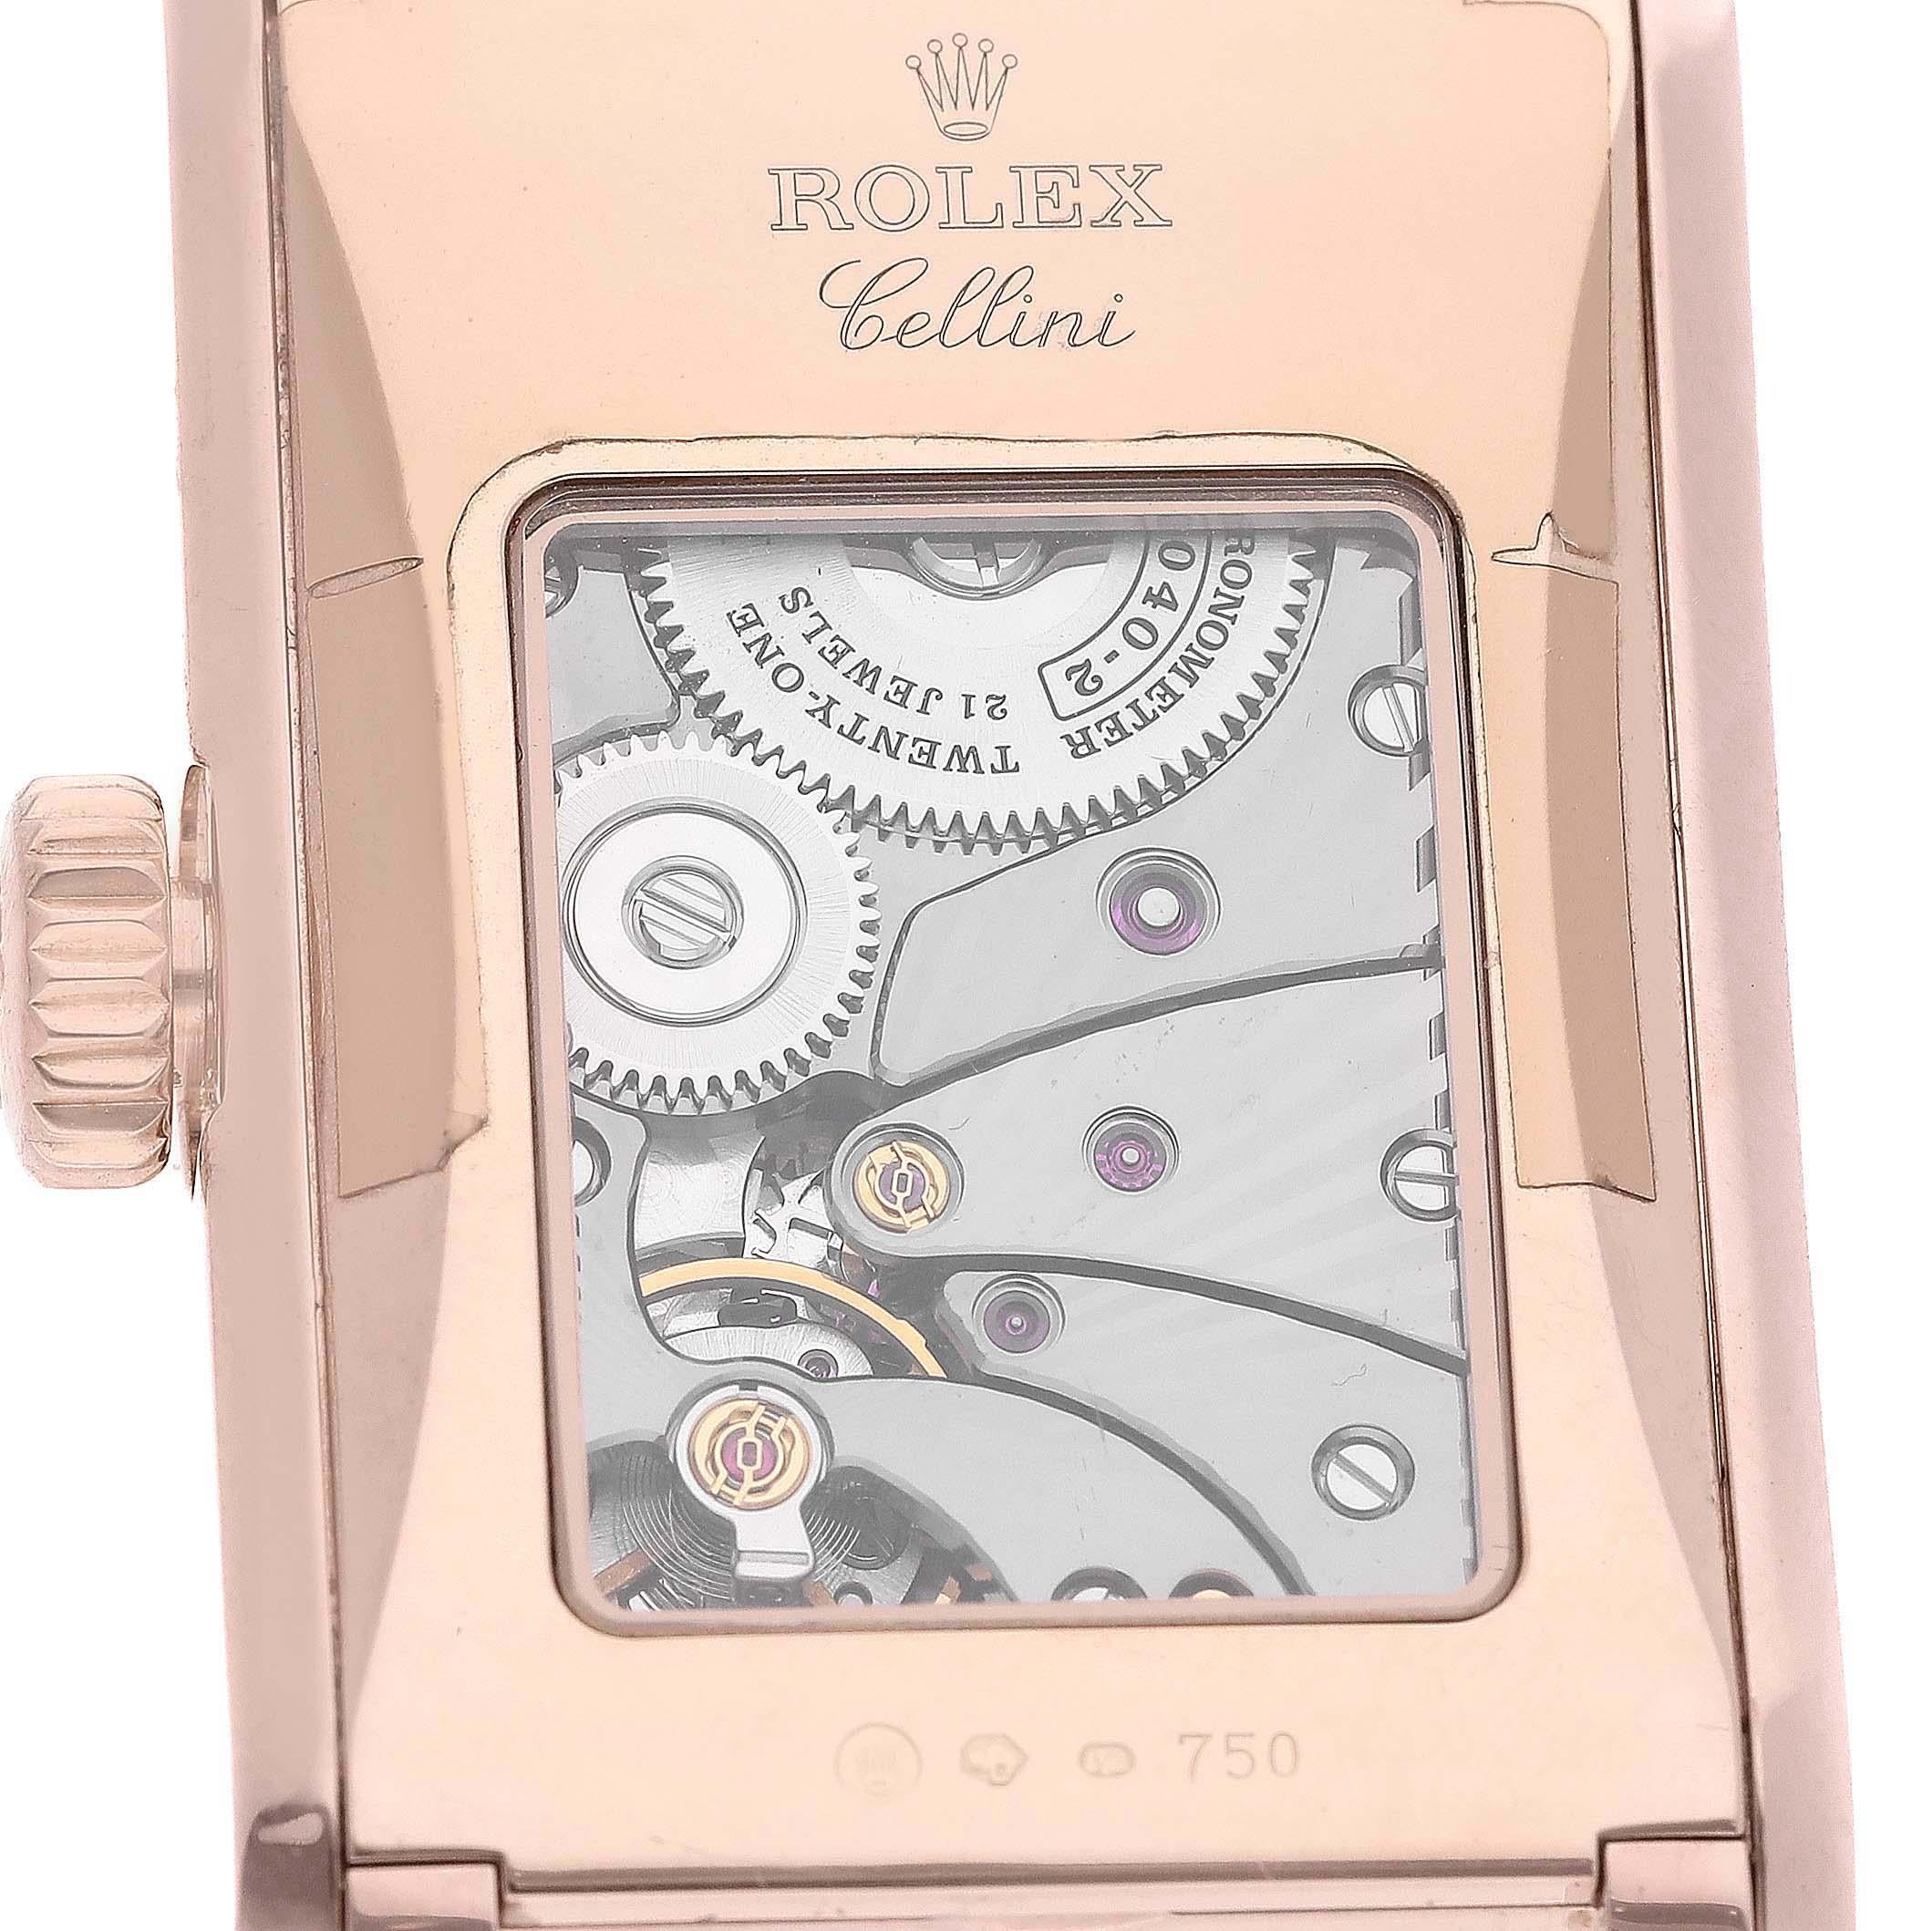 Rolex Cellini Prince Rose Gold Black Dial Leather Strap Mens Watch 5442. Mouvement à remontage manuel. Boîtier en or Everose 18 carats 28,0 x 47,0 mm. Logo Rolex sur la couronne. Fond saphir transparent d'exposition. . Verre saphir résistant aux